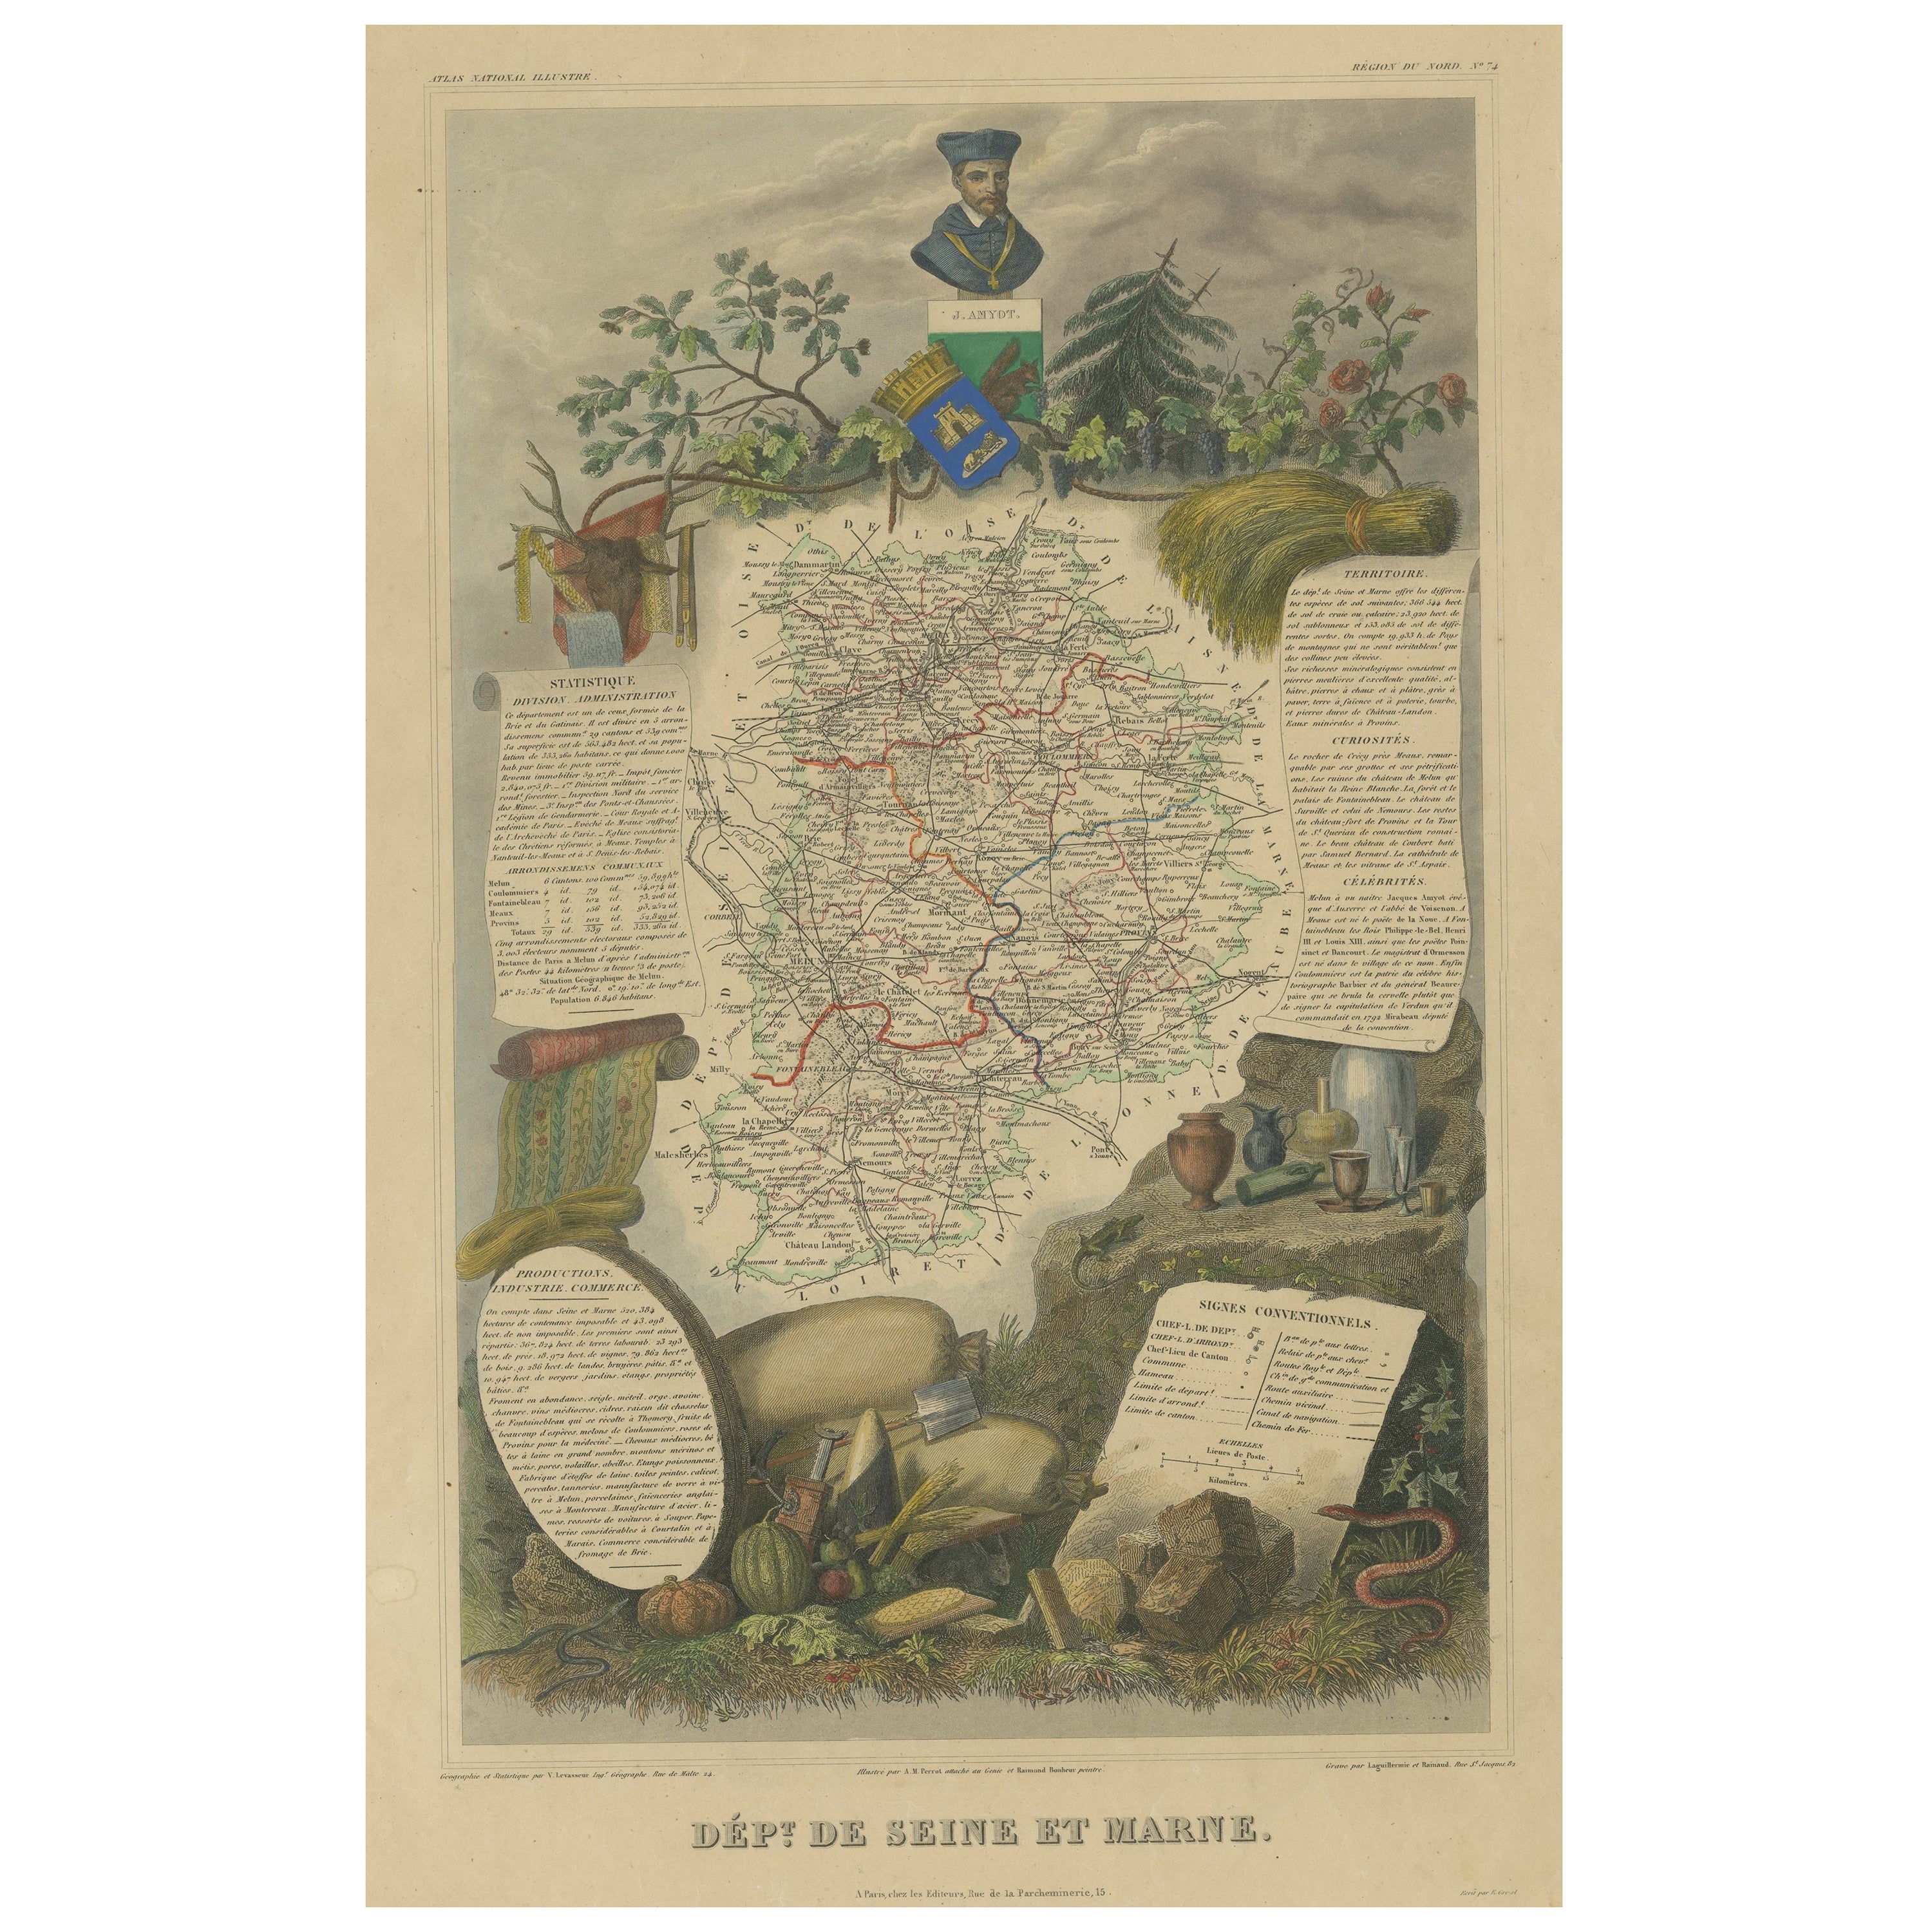 Handkolorierte antike Karte des Departements Seine Et Marne, Frankreich